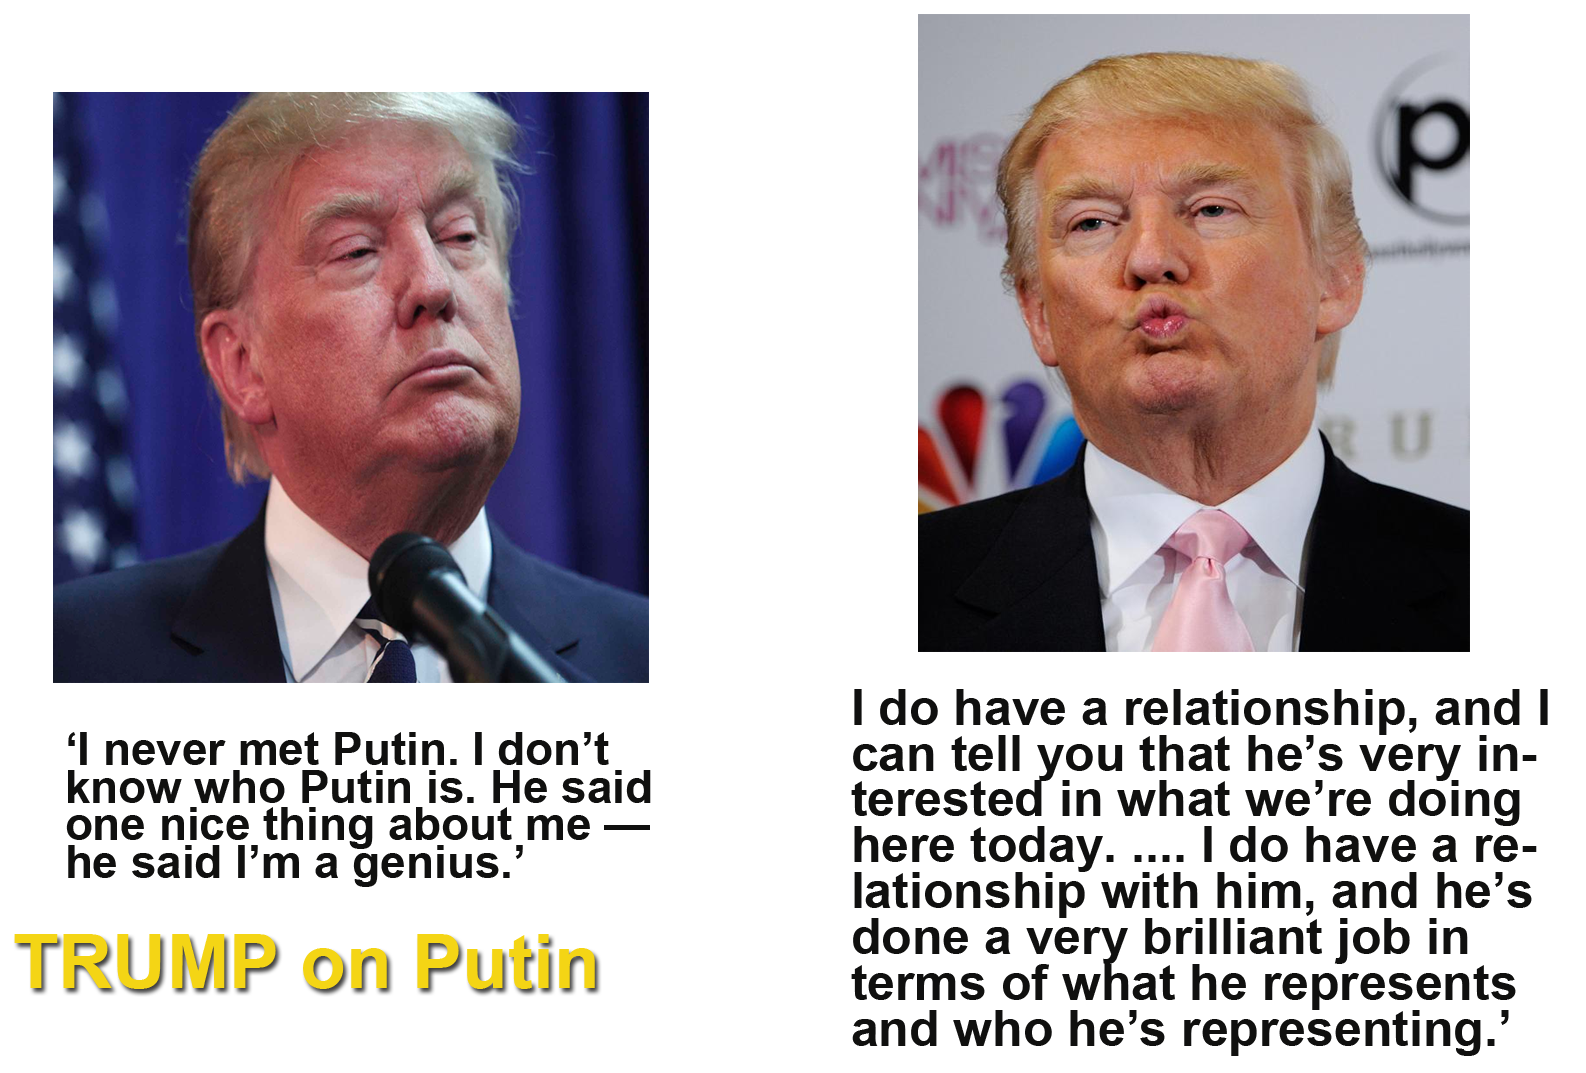 Trump on Putin